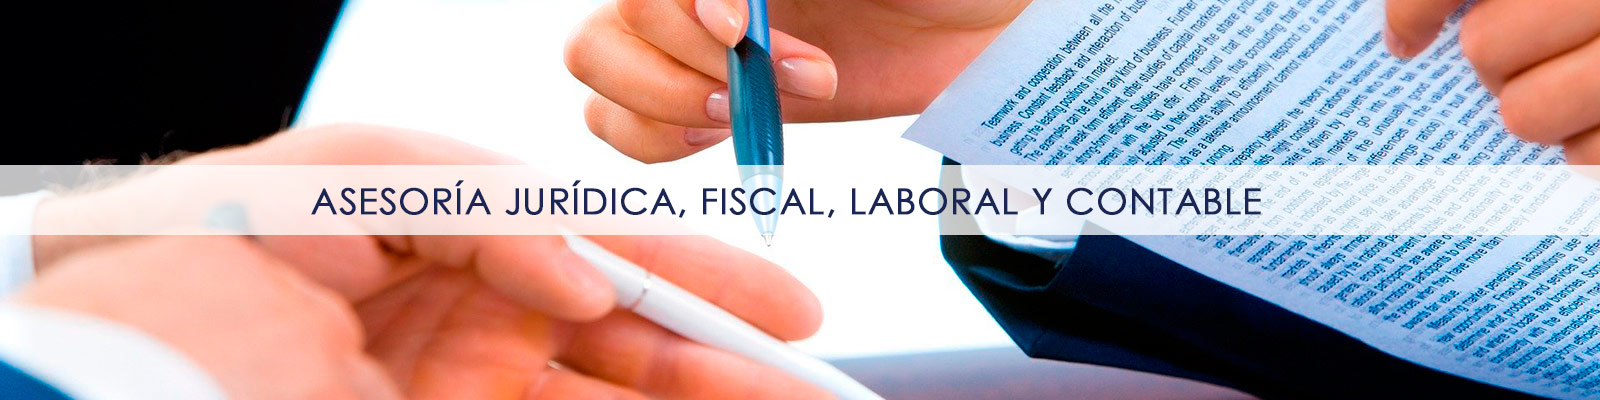 Asesoria juridica, fiscal, laboral y contable en Fuensalida.